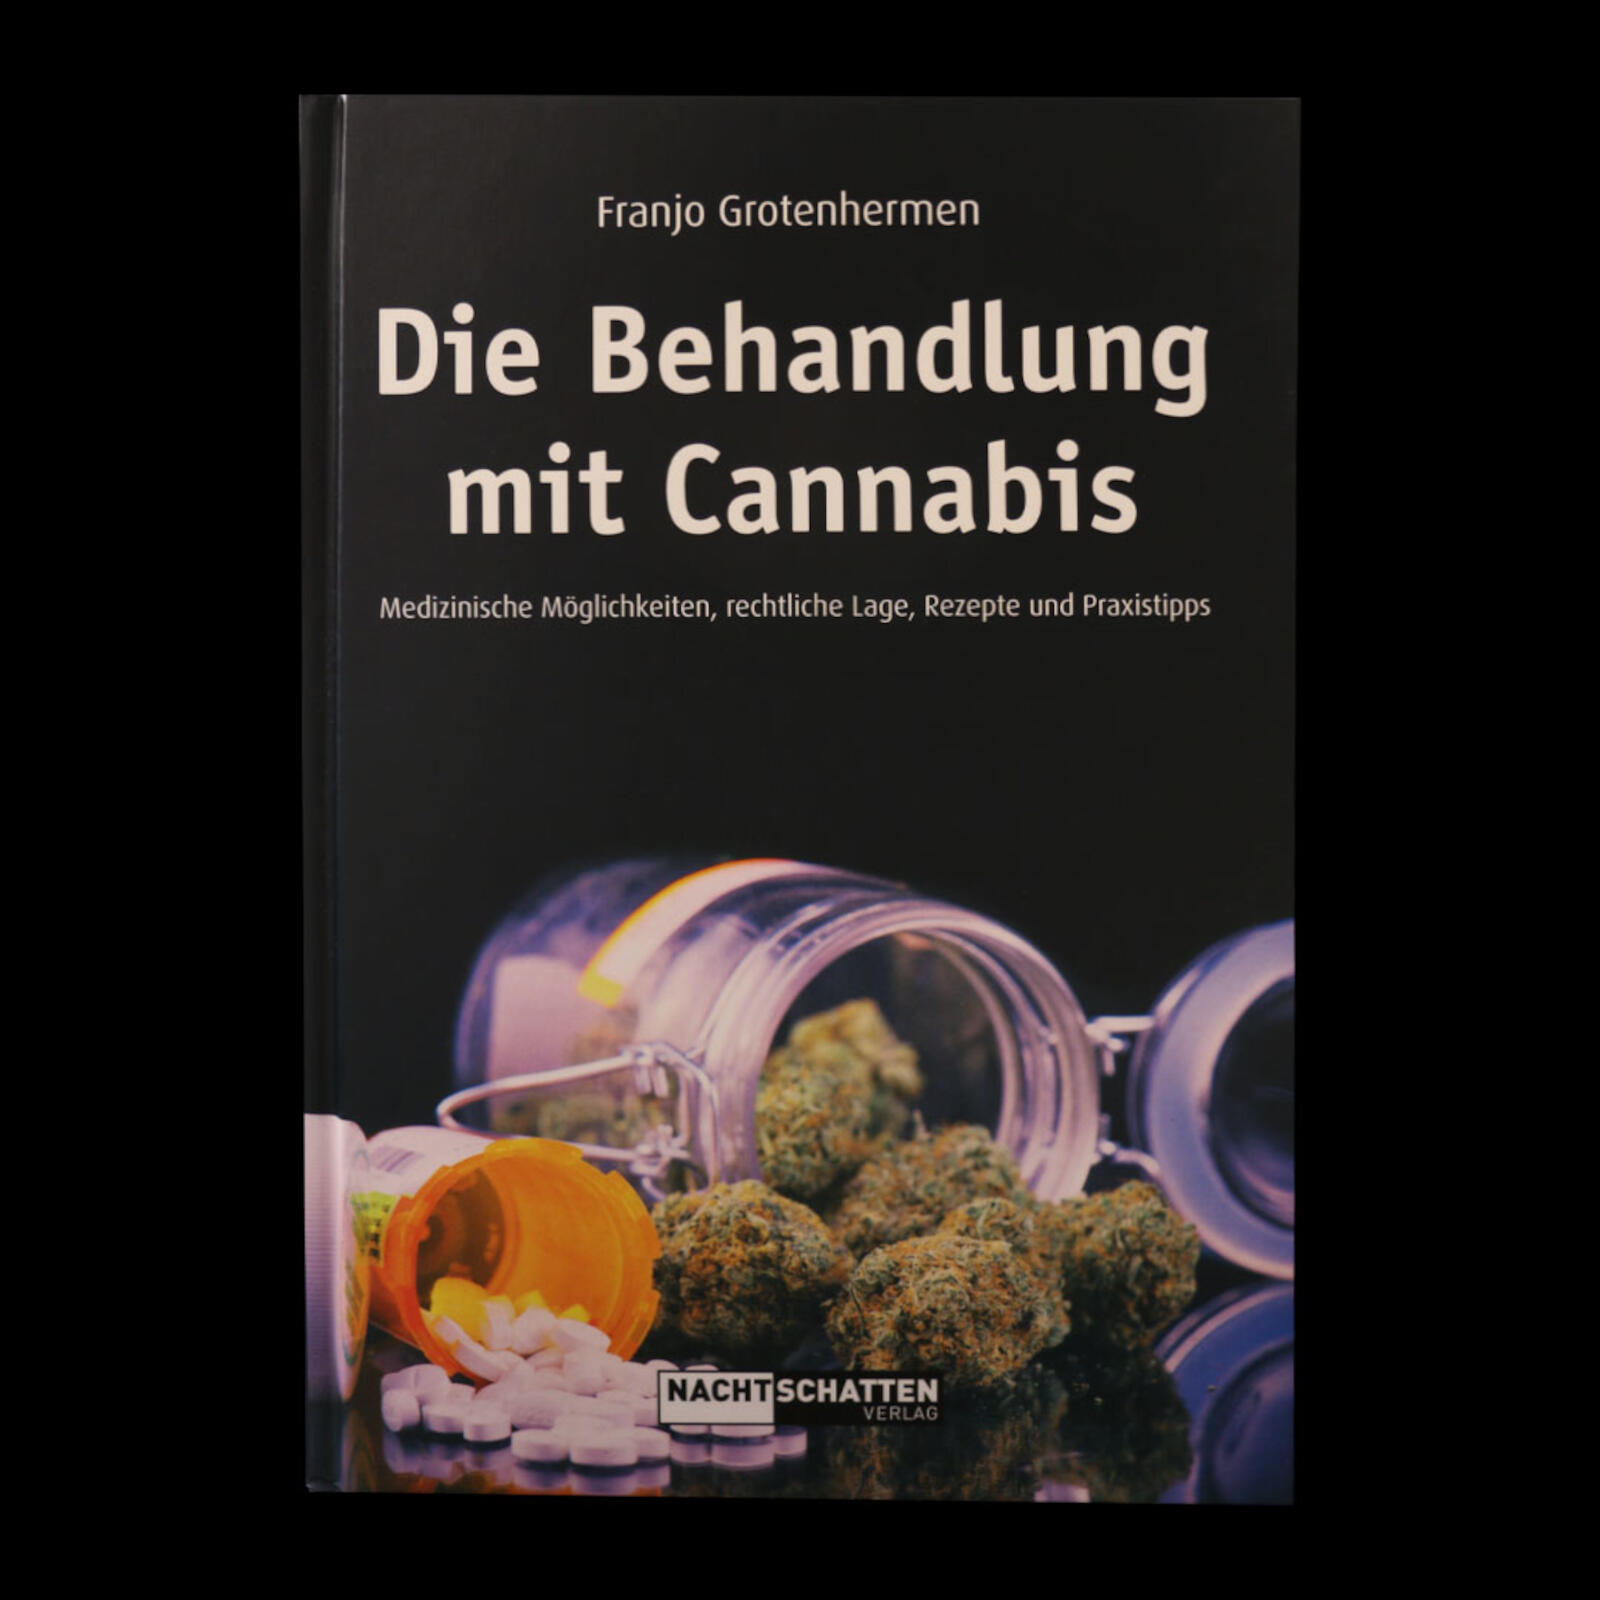 Die Behandlung mit Cannabis